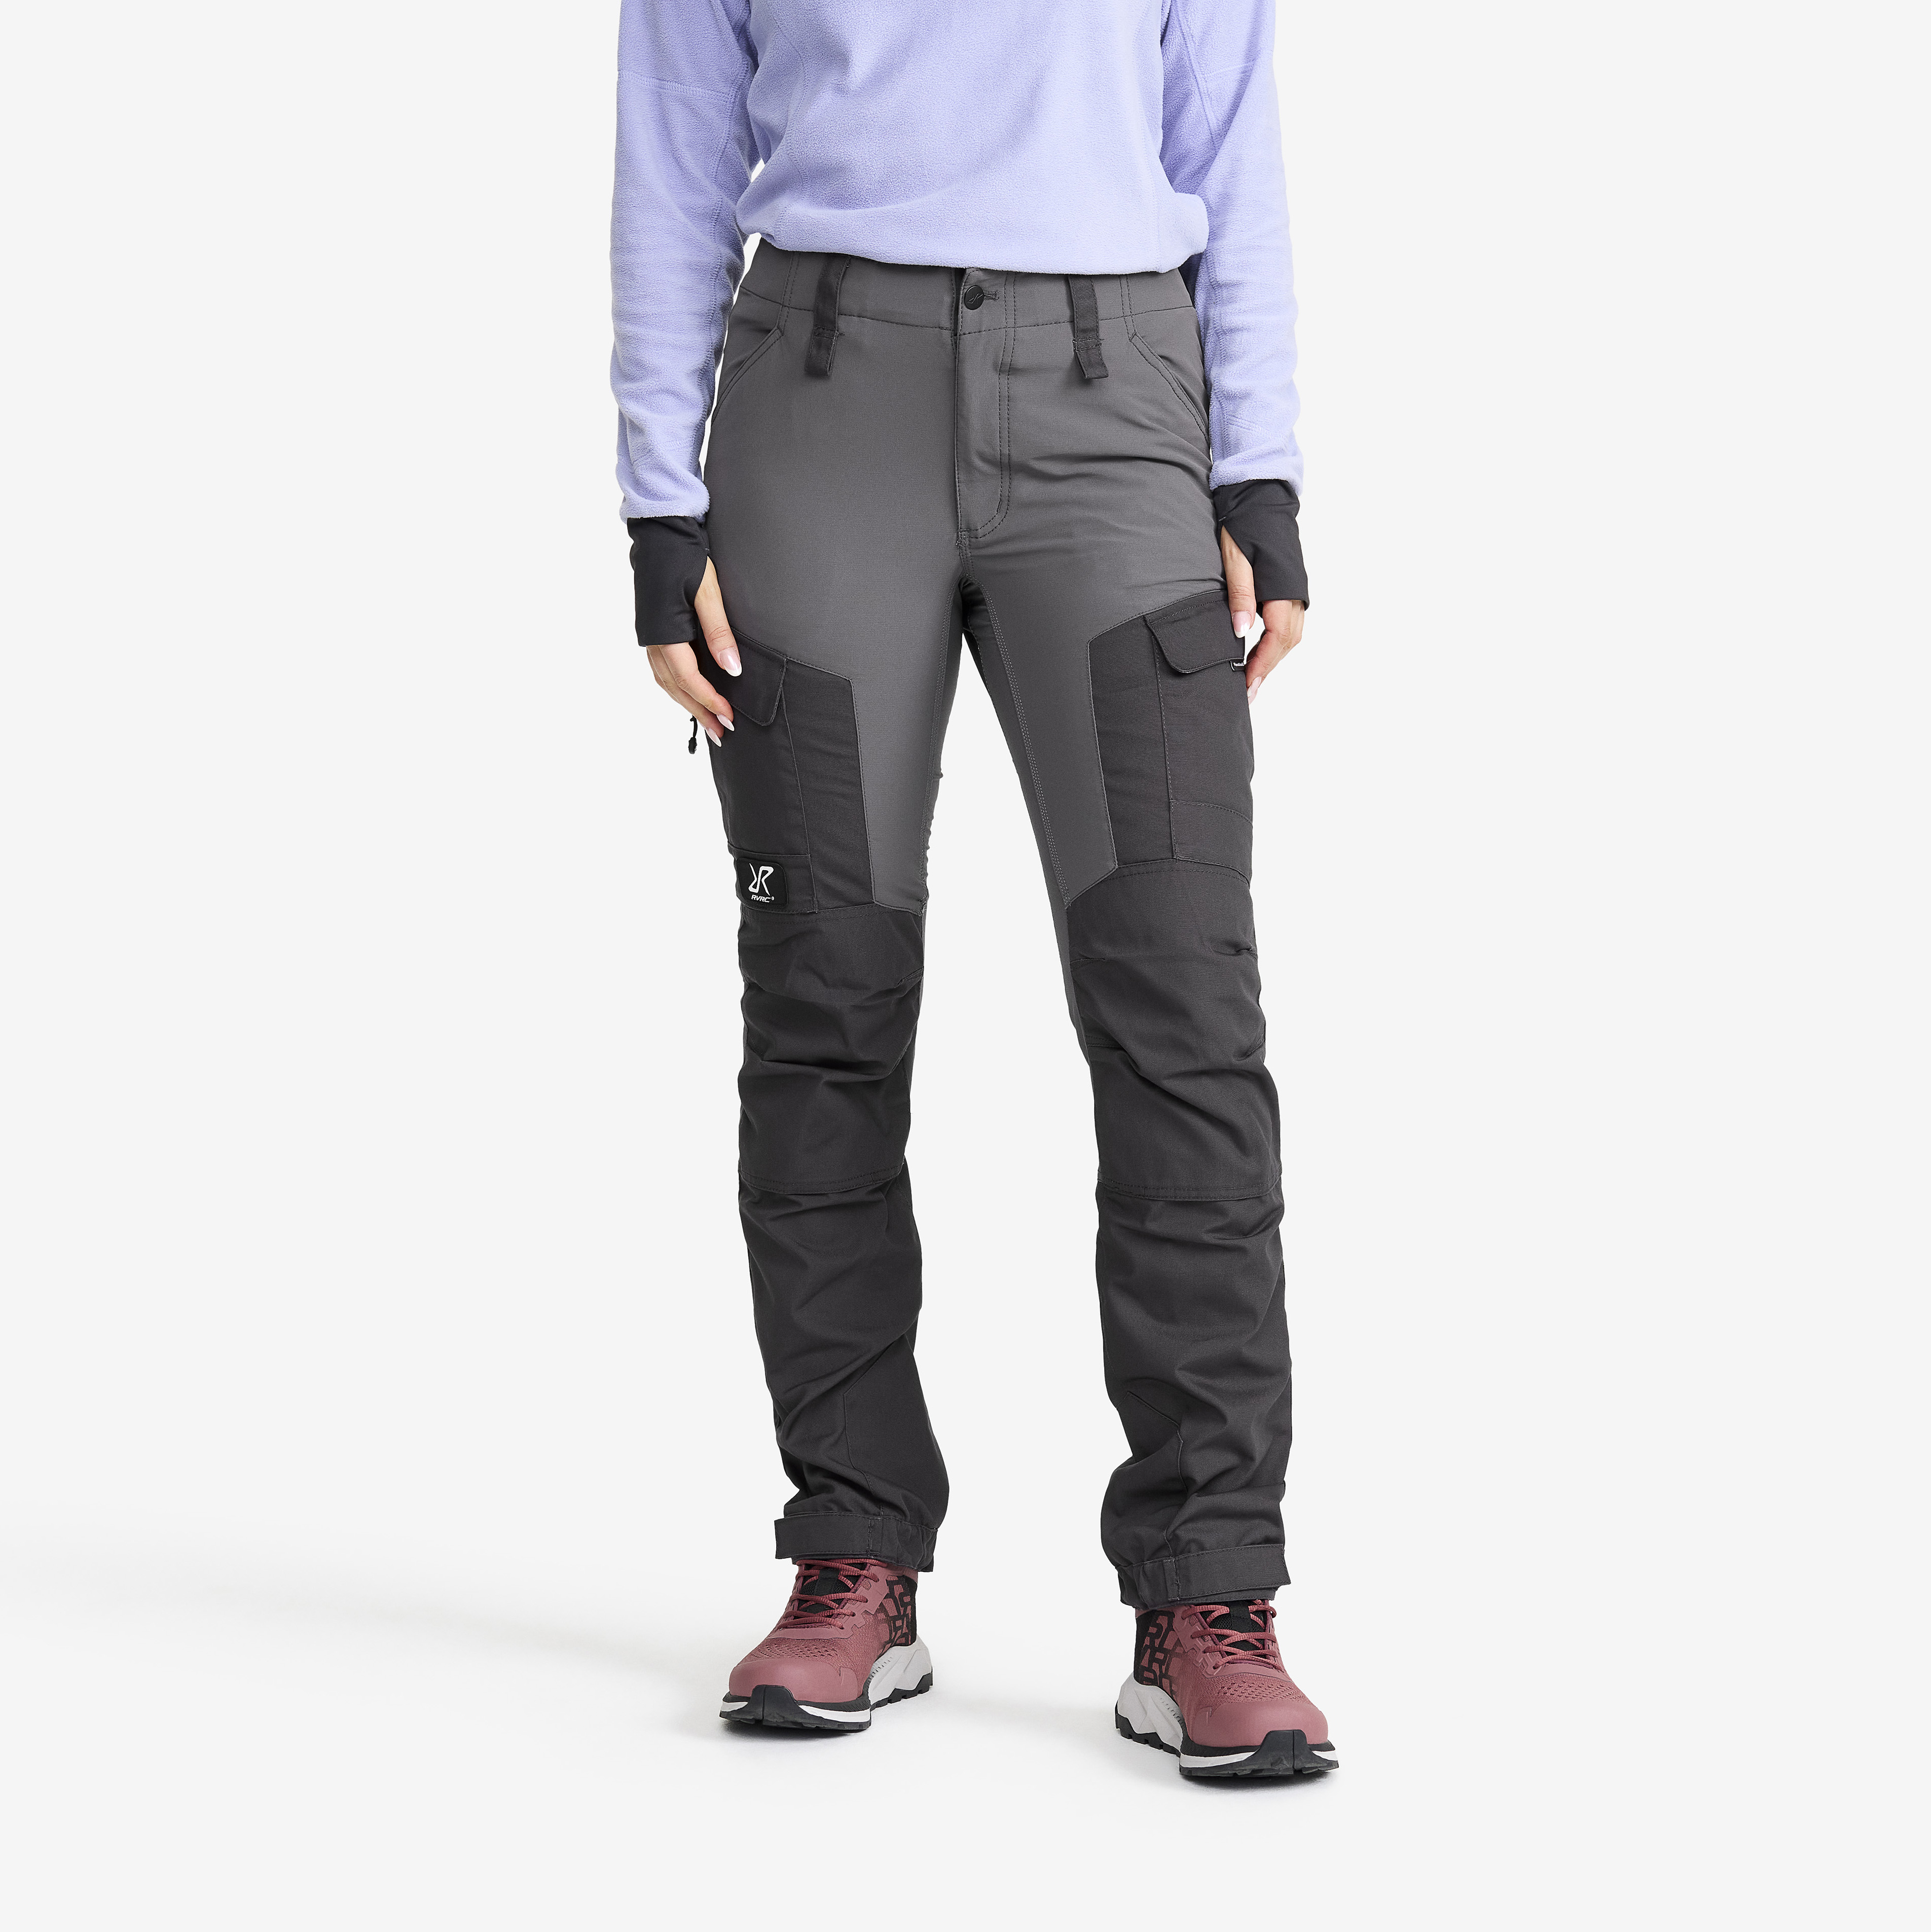 RVRC GP outdoorové kalhoty pro ženy v šedé barvě